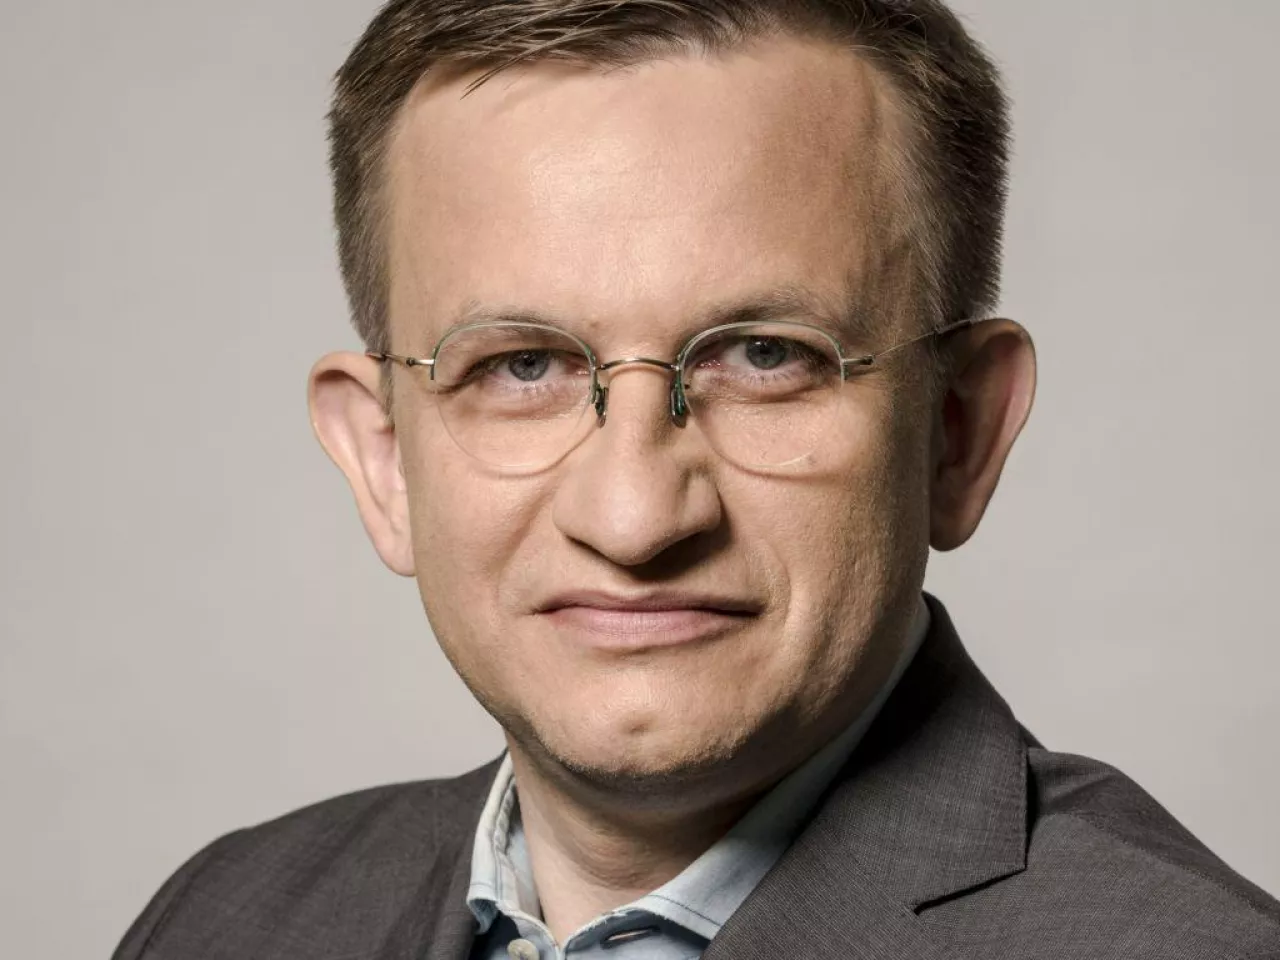 Przemysław Dwojak, senior director w GfK (fot. mat. pras.)